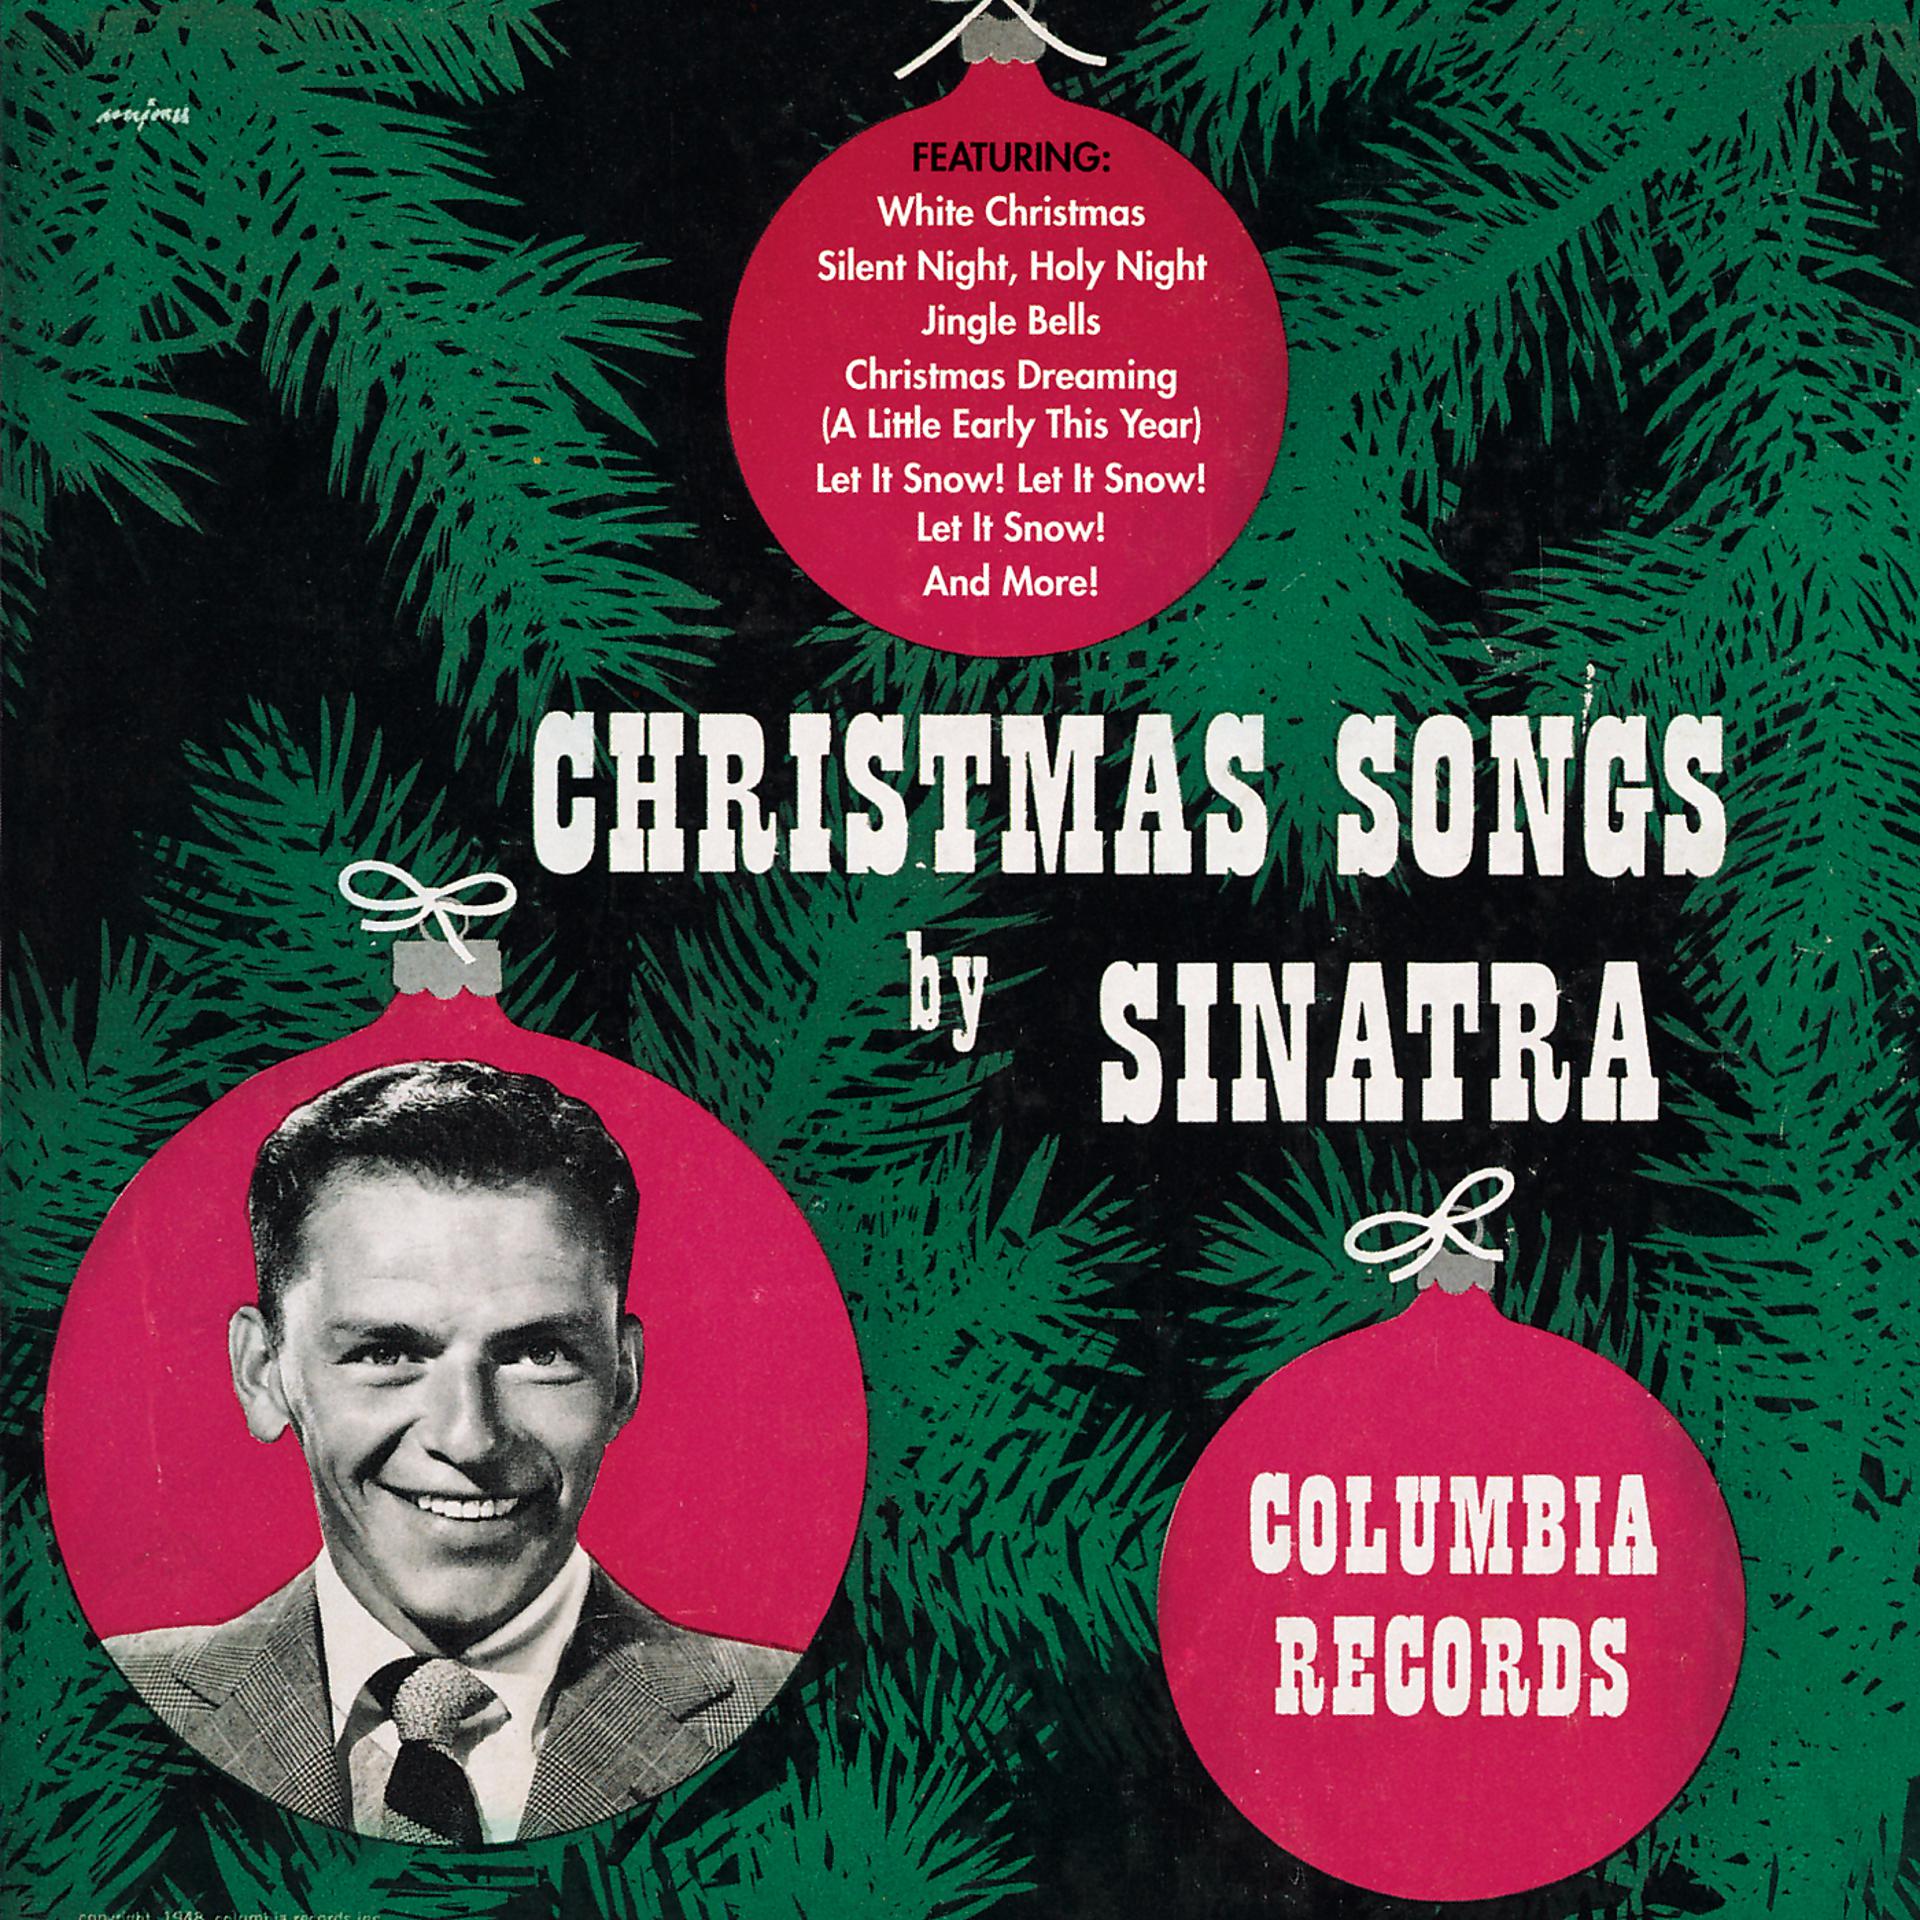 Белое рождество песня. Christmas Songs by Sinatra Фрэнк Синатра. Frank Sinatra Christmas album. Фрэнк Синатра лет ИТ Сноу. Frank Sinatra Let it Snow обложка.